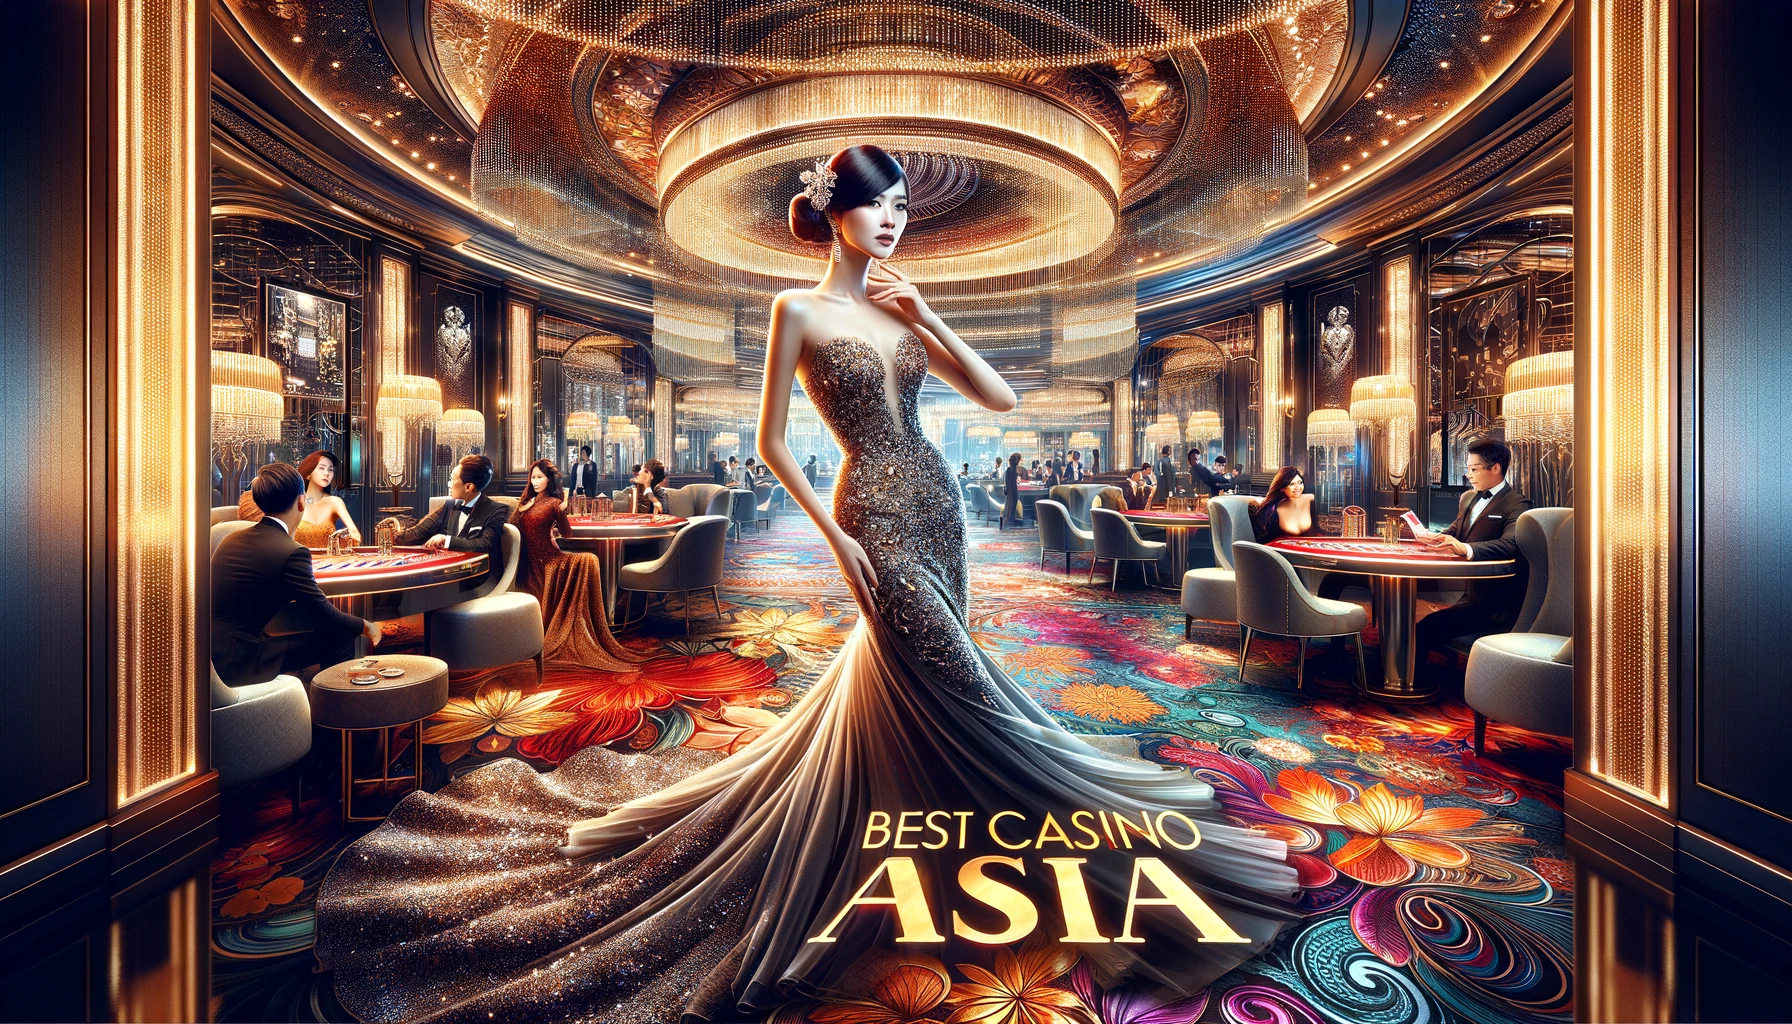 Chào mừng bạn đến với Best Casino Asia - betcasino.asia!